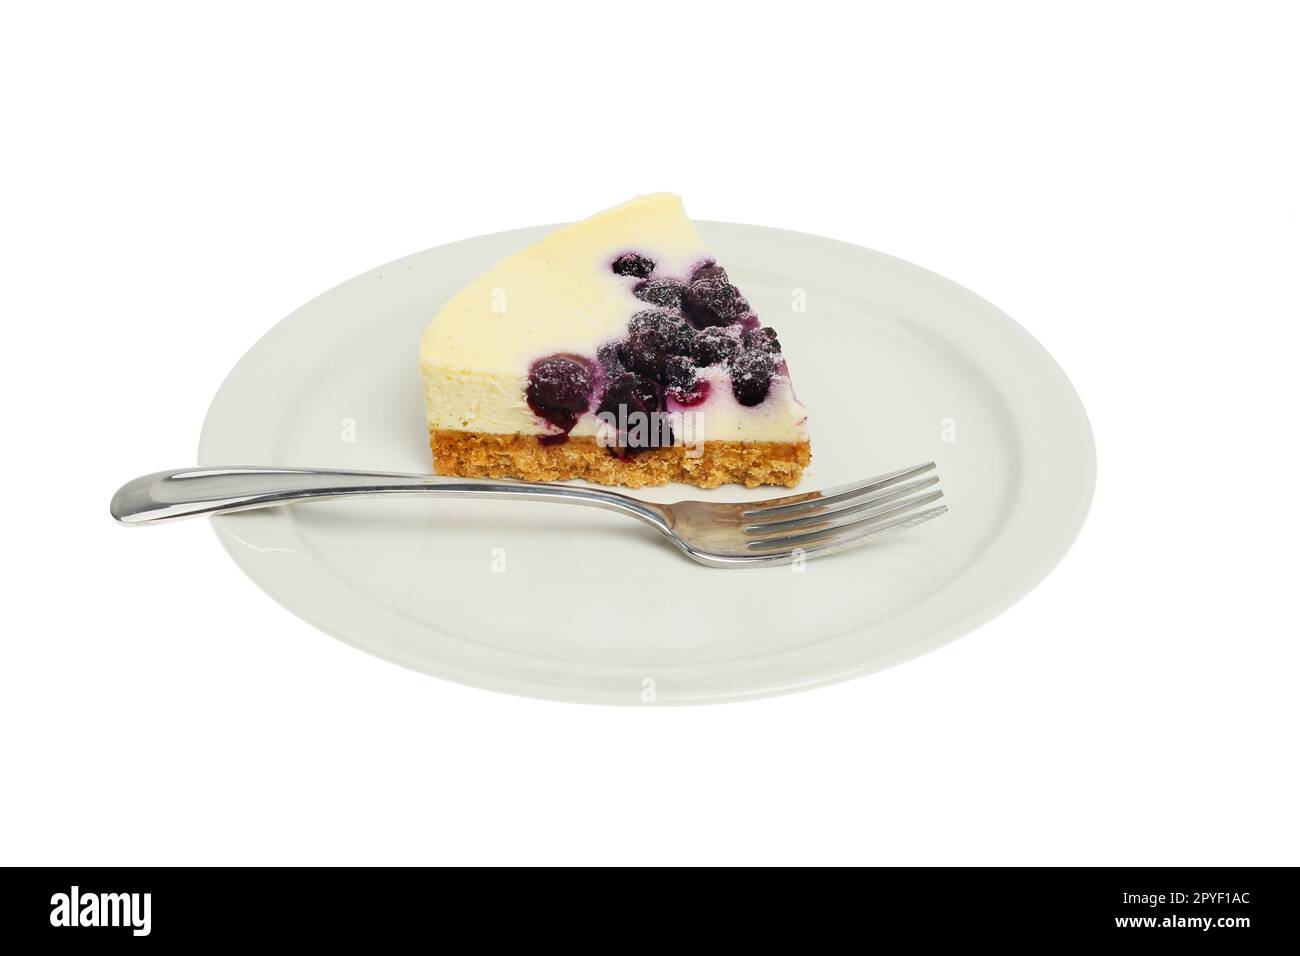 Tranche de cheesecake à la vanille et à la myrtille avec une fourchette sur une assiette isolée du blanc Banque D'Images